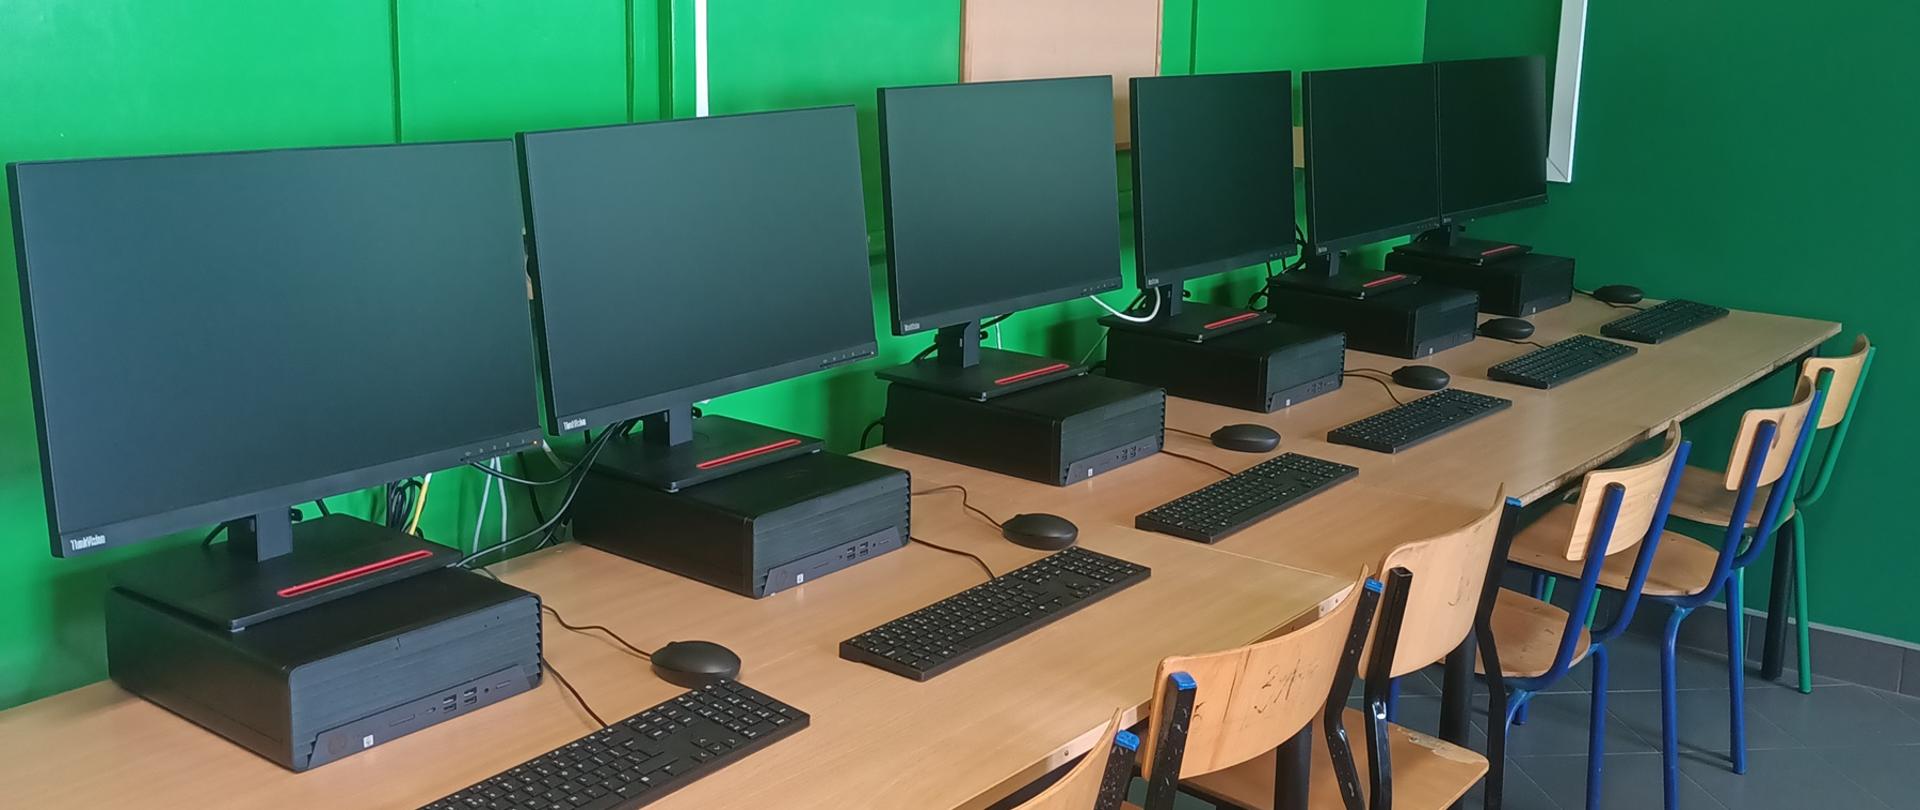 Połączone biurka przy ścianie. Na nich stoją komputery z monitorami a przy nich krzesła